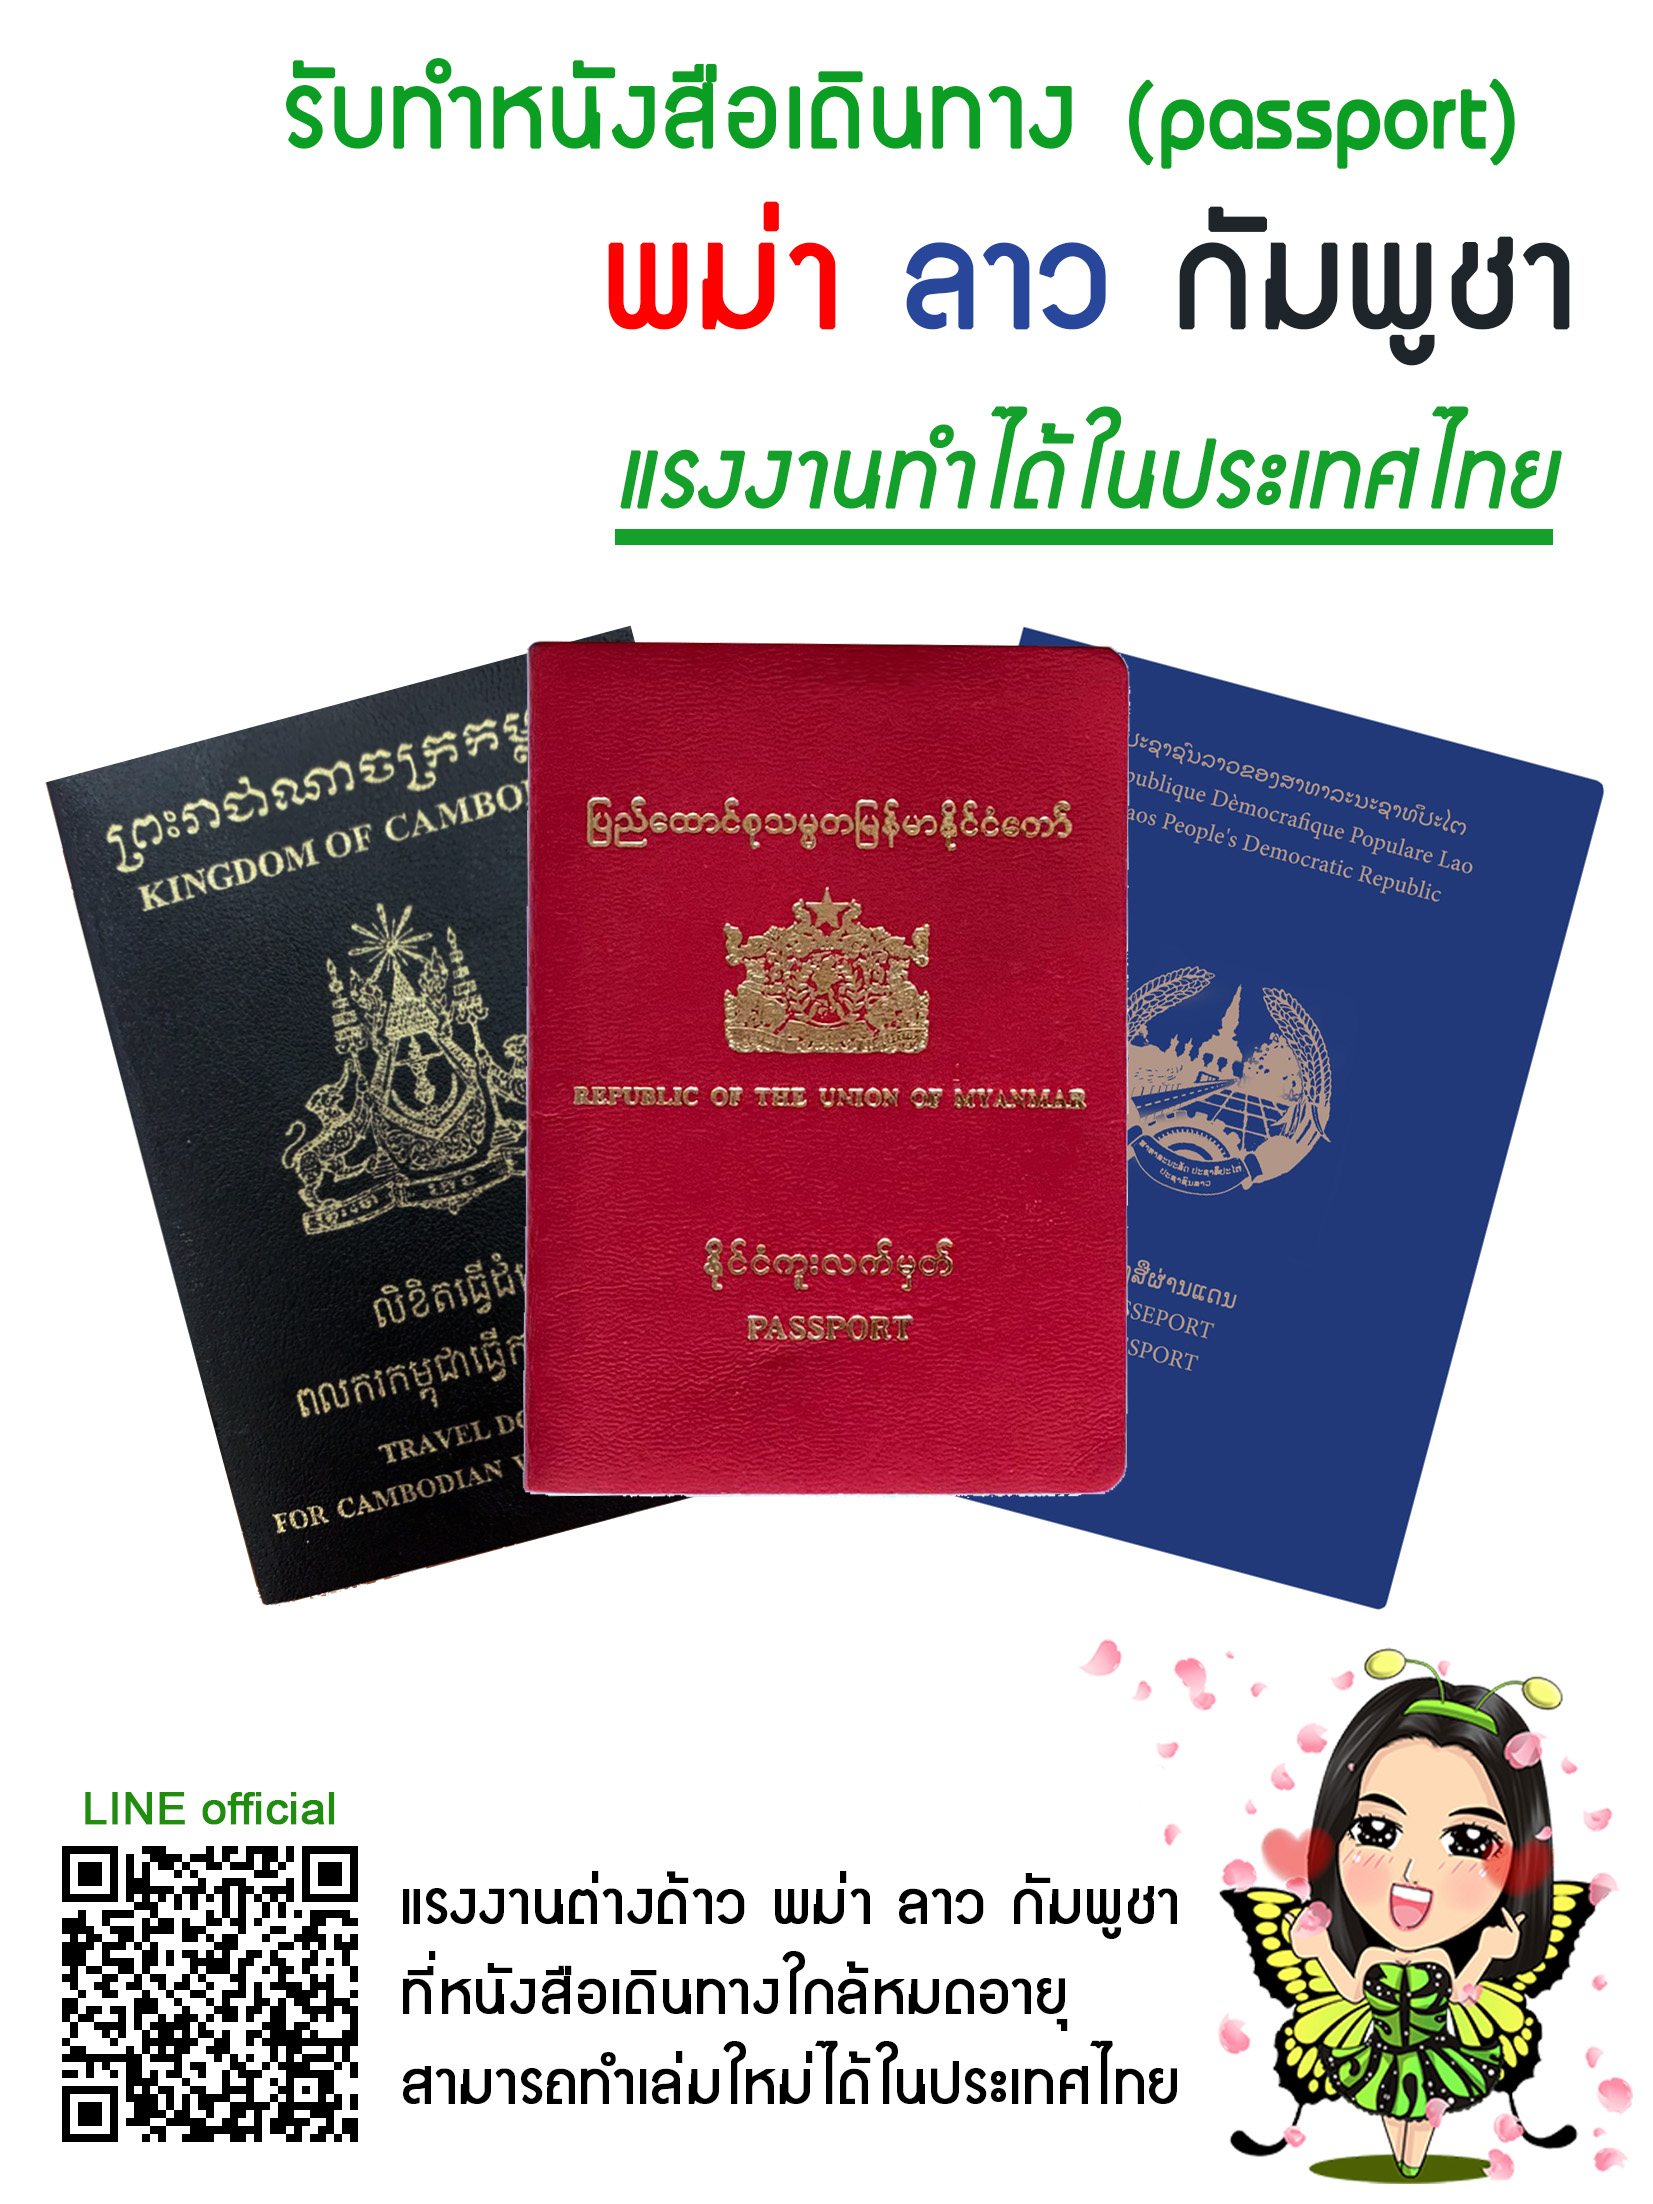 รับทำหนังสือเดินทาง (พาสปอร์ต) พม่า ลาว กัมพูชา